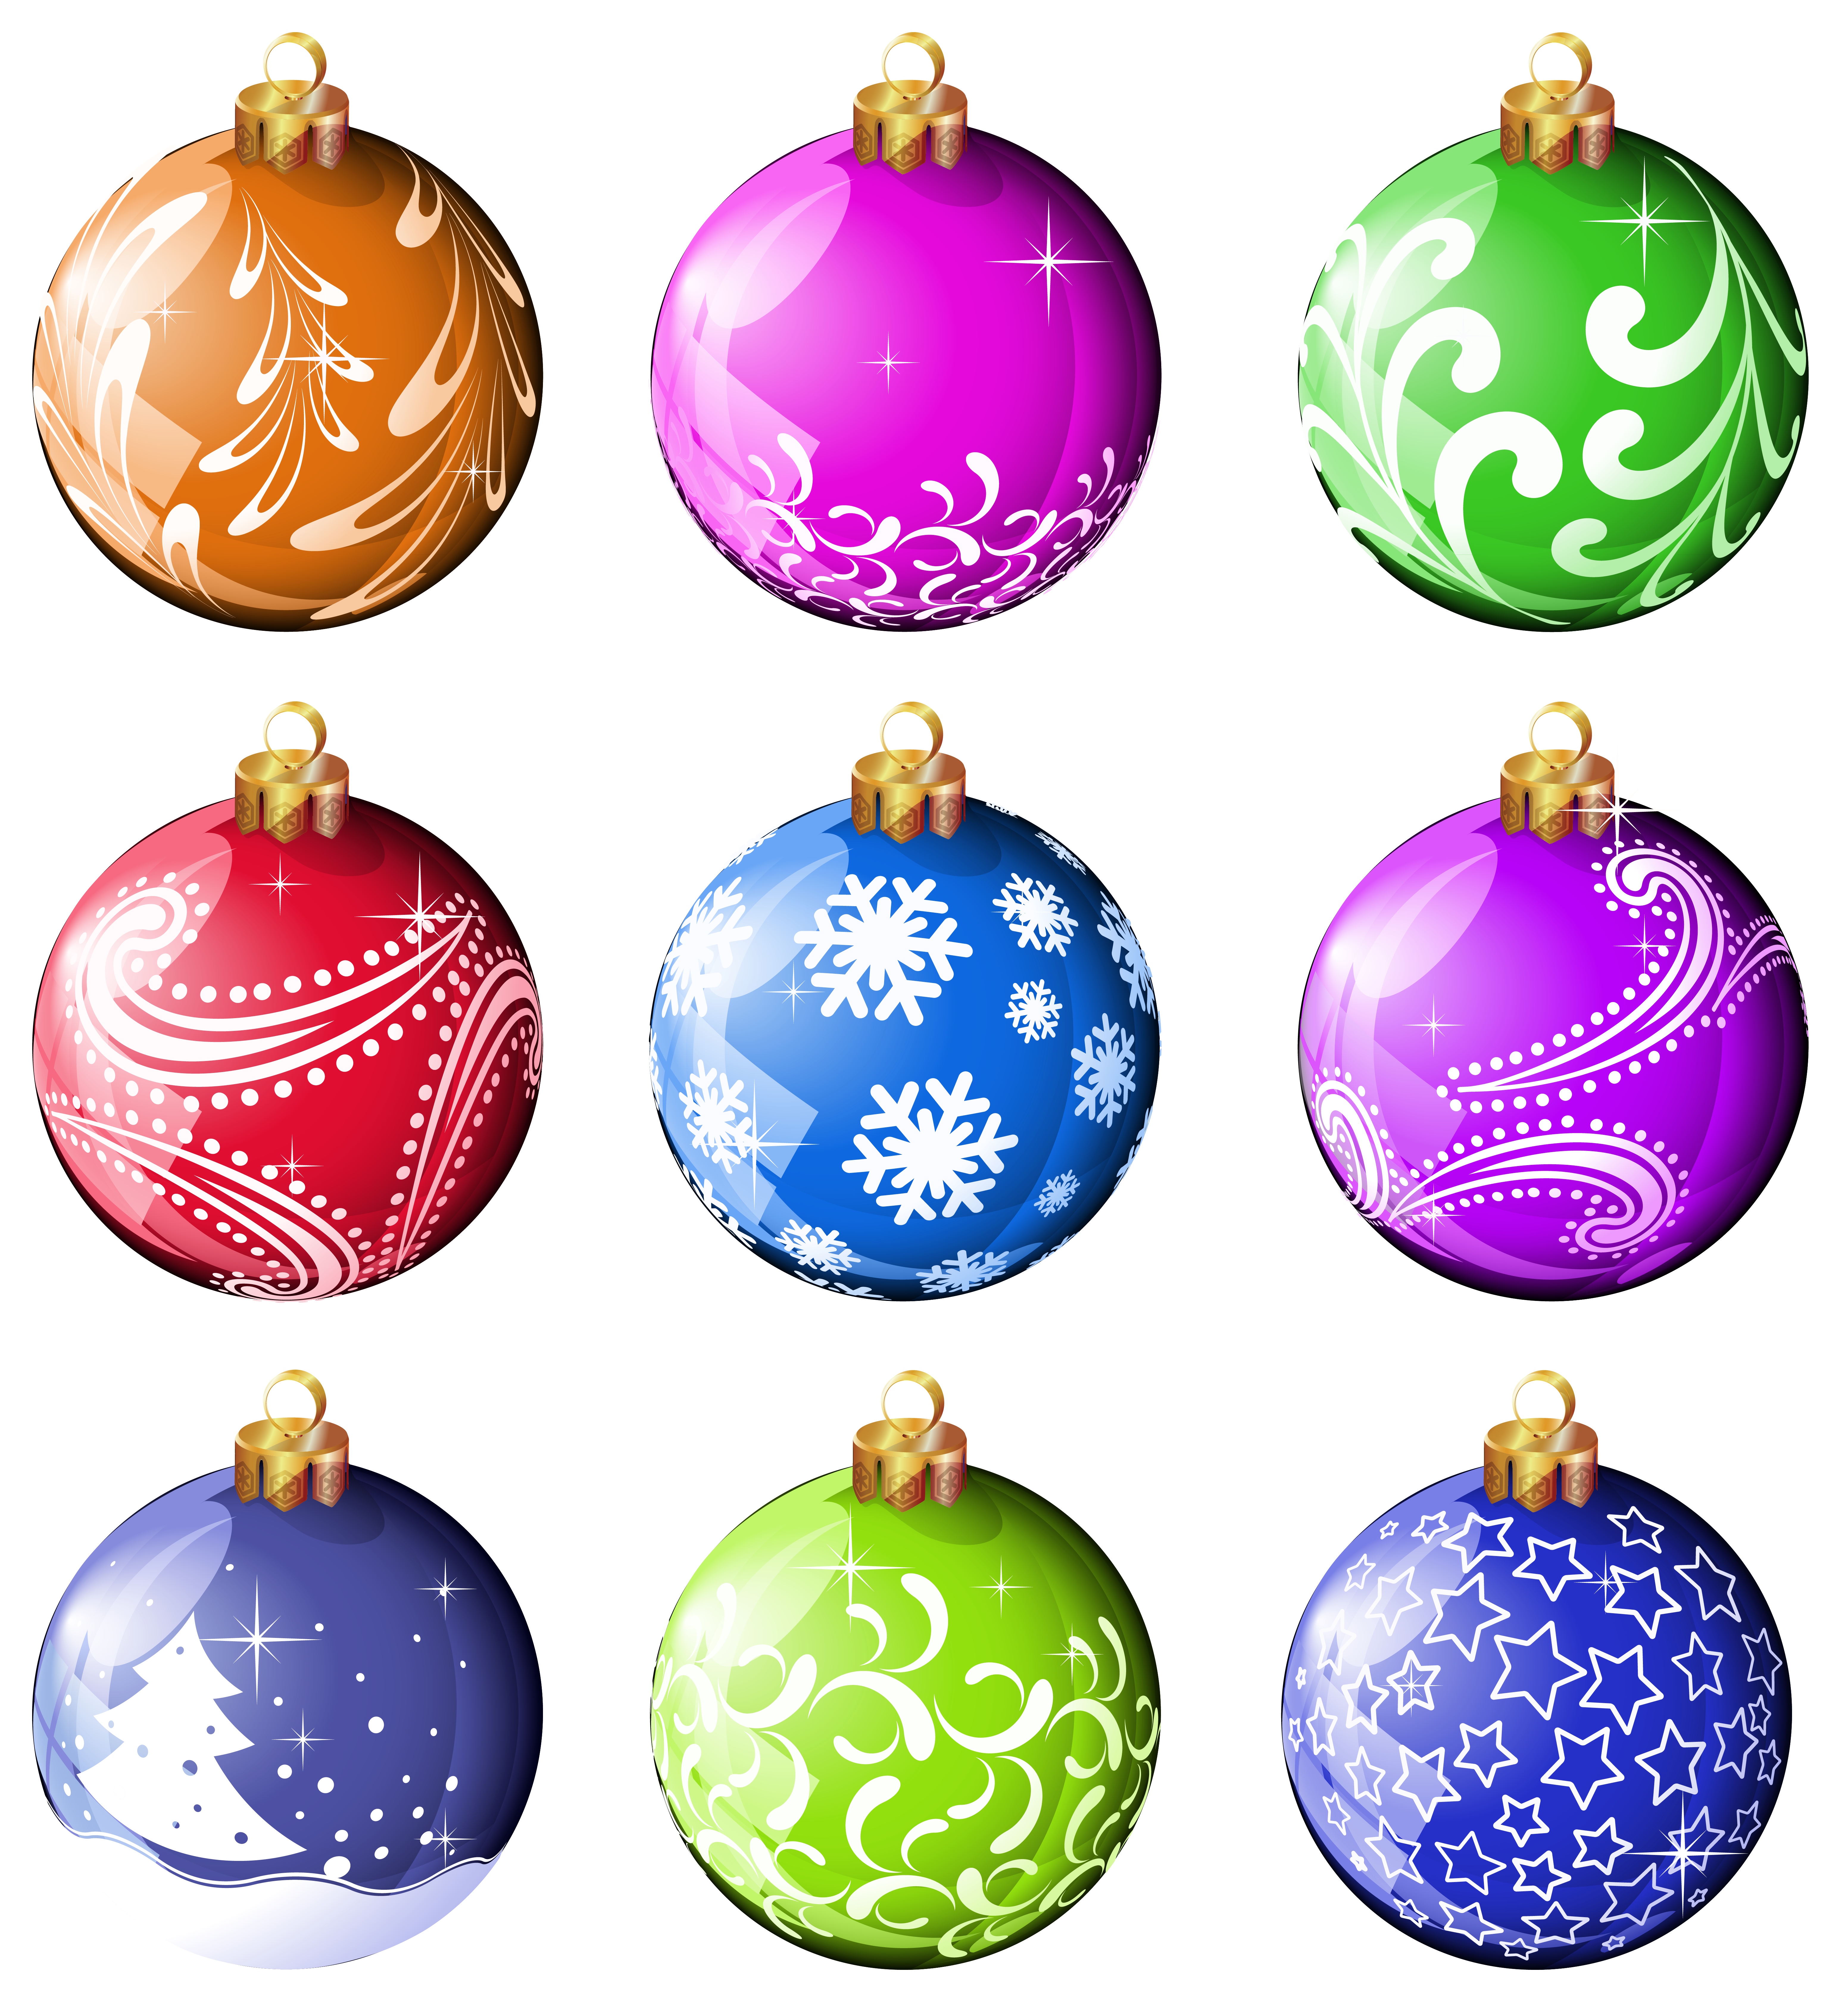 Free Christmas Ornaments Printable